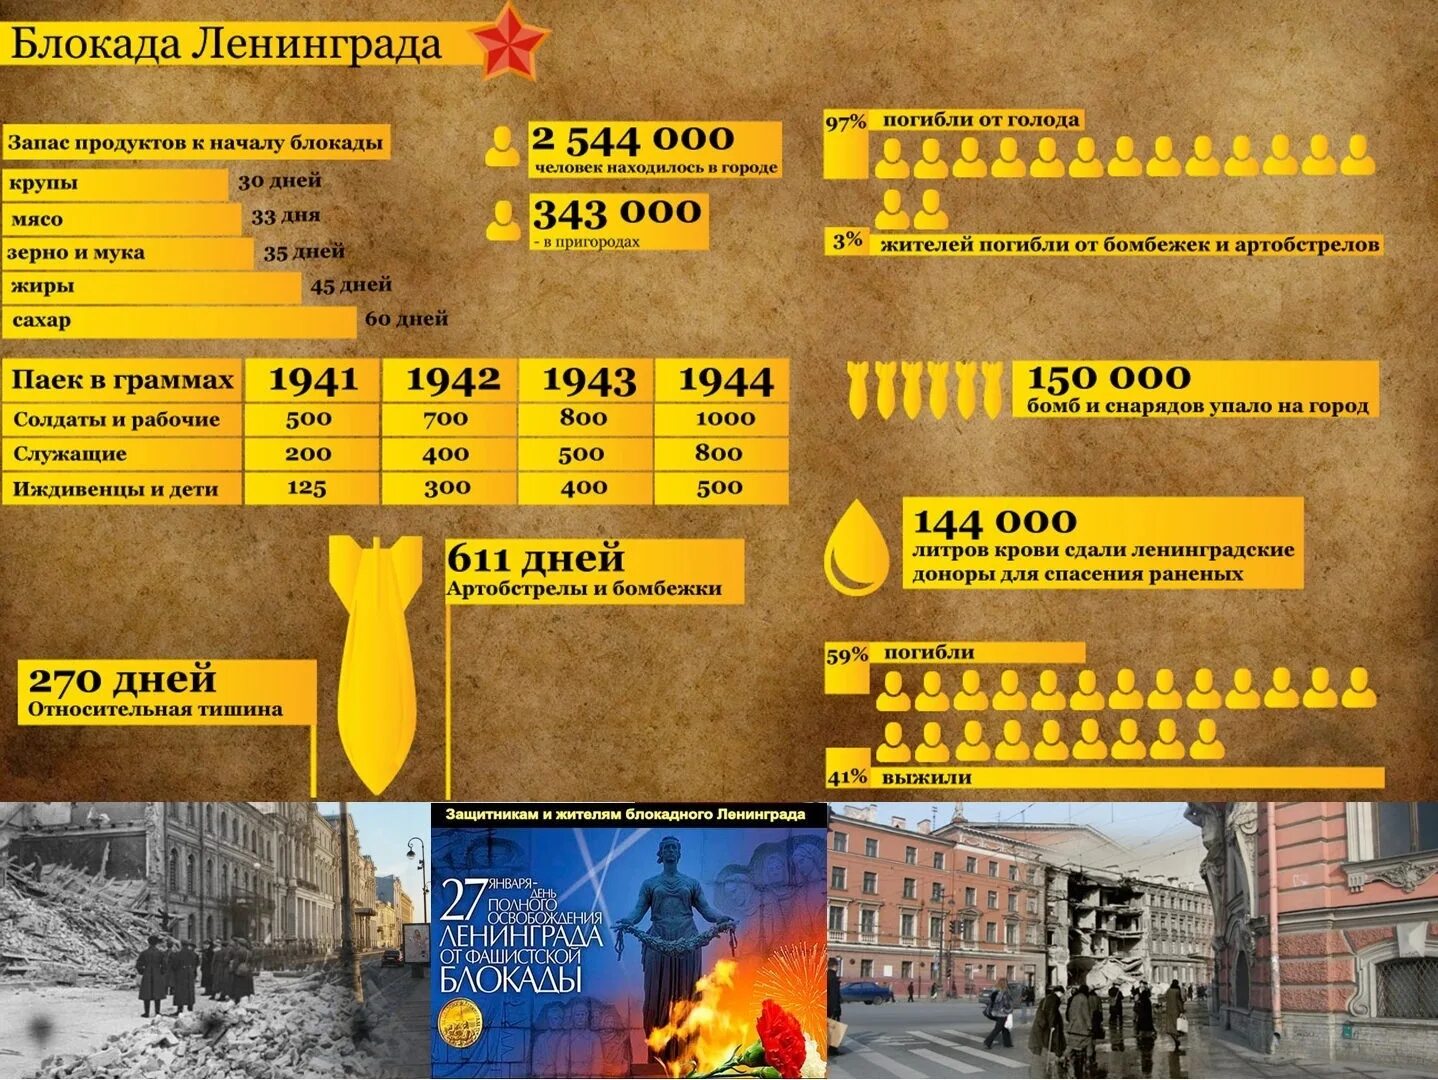 Сколько человек погибло в блокаде. Блокада в цифрах. Начало блокады Ленинграда. Блокада Ленинграда в цифрах. Блокада в цифрах и фактах.